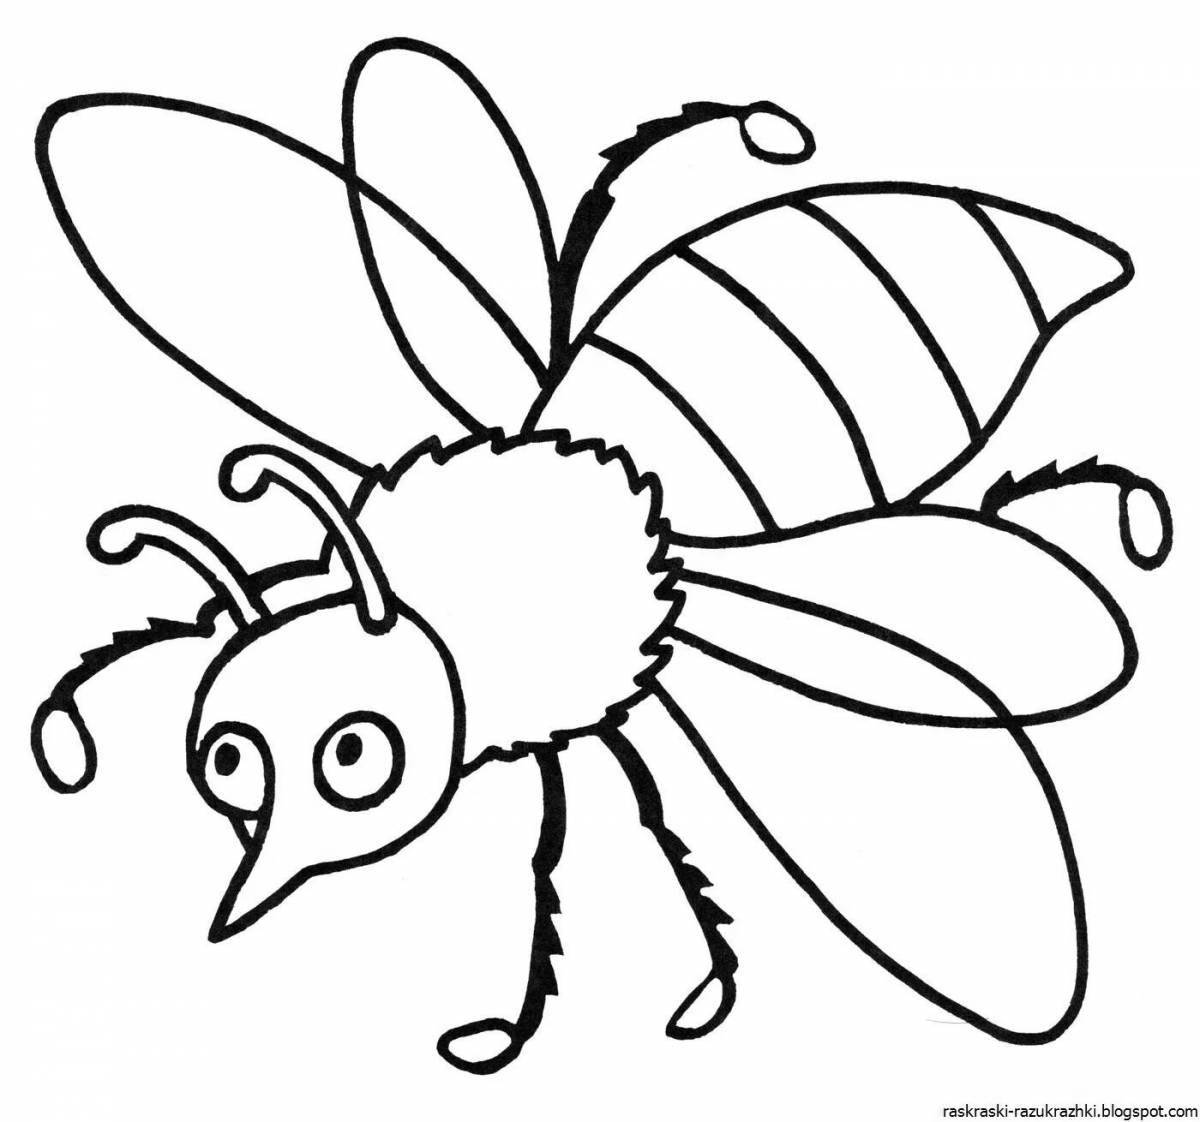 Веселые раскраски насекомых для детей 6-7 лет